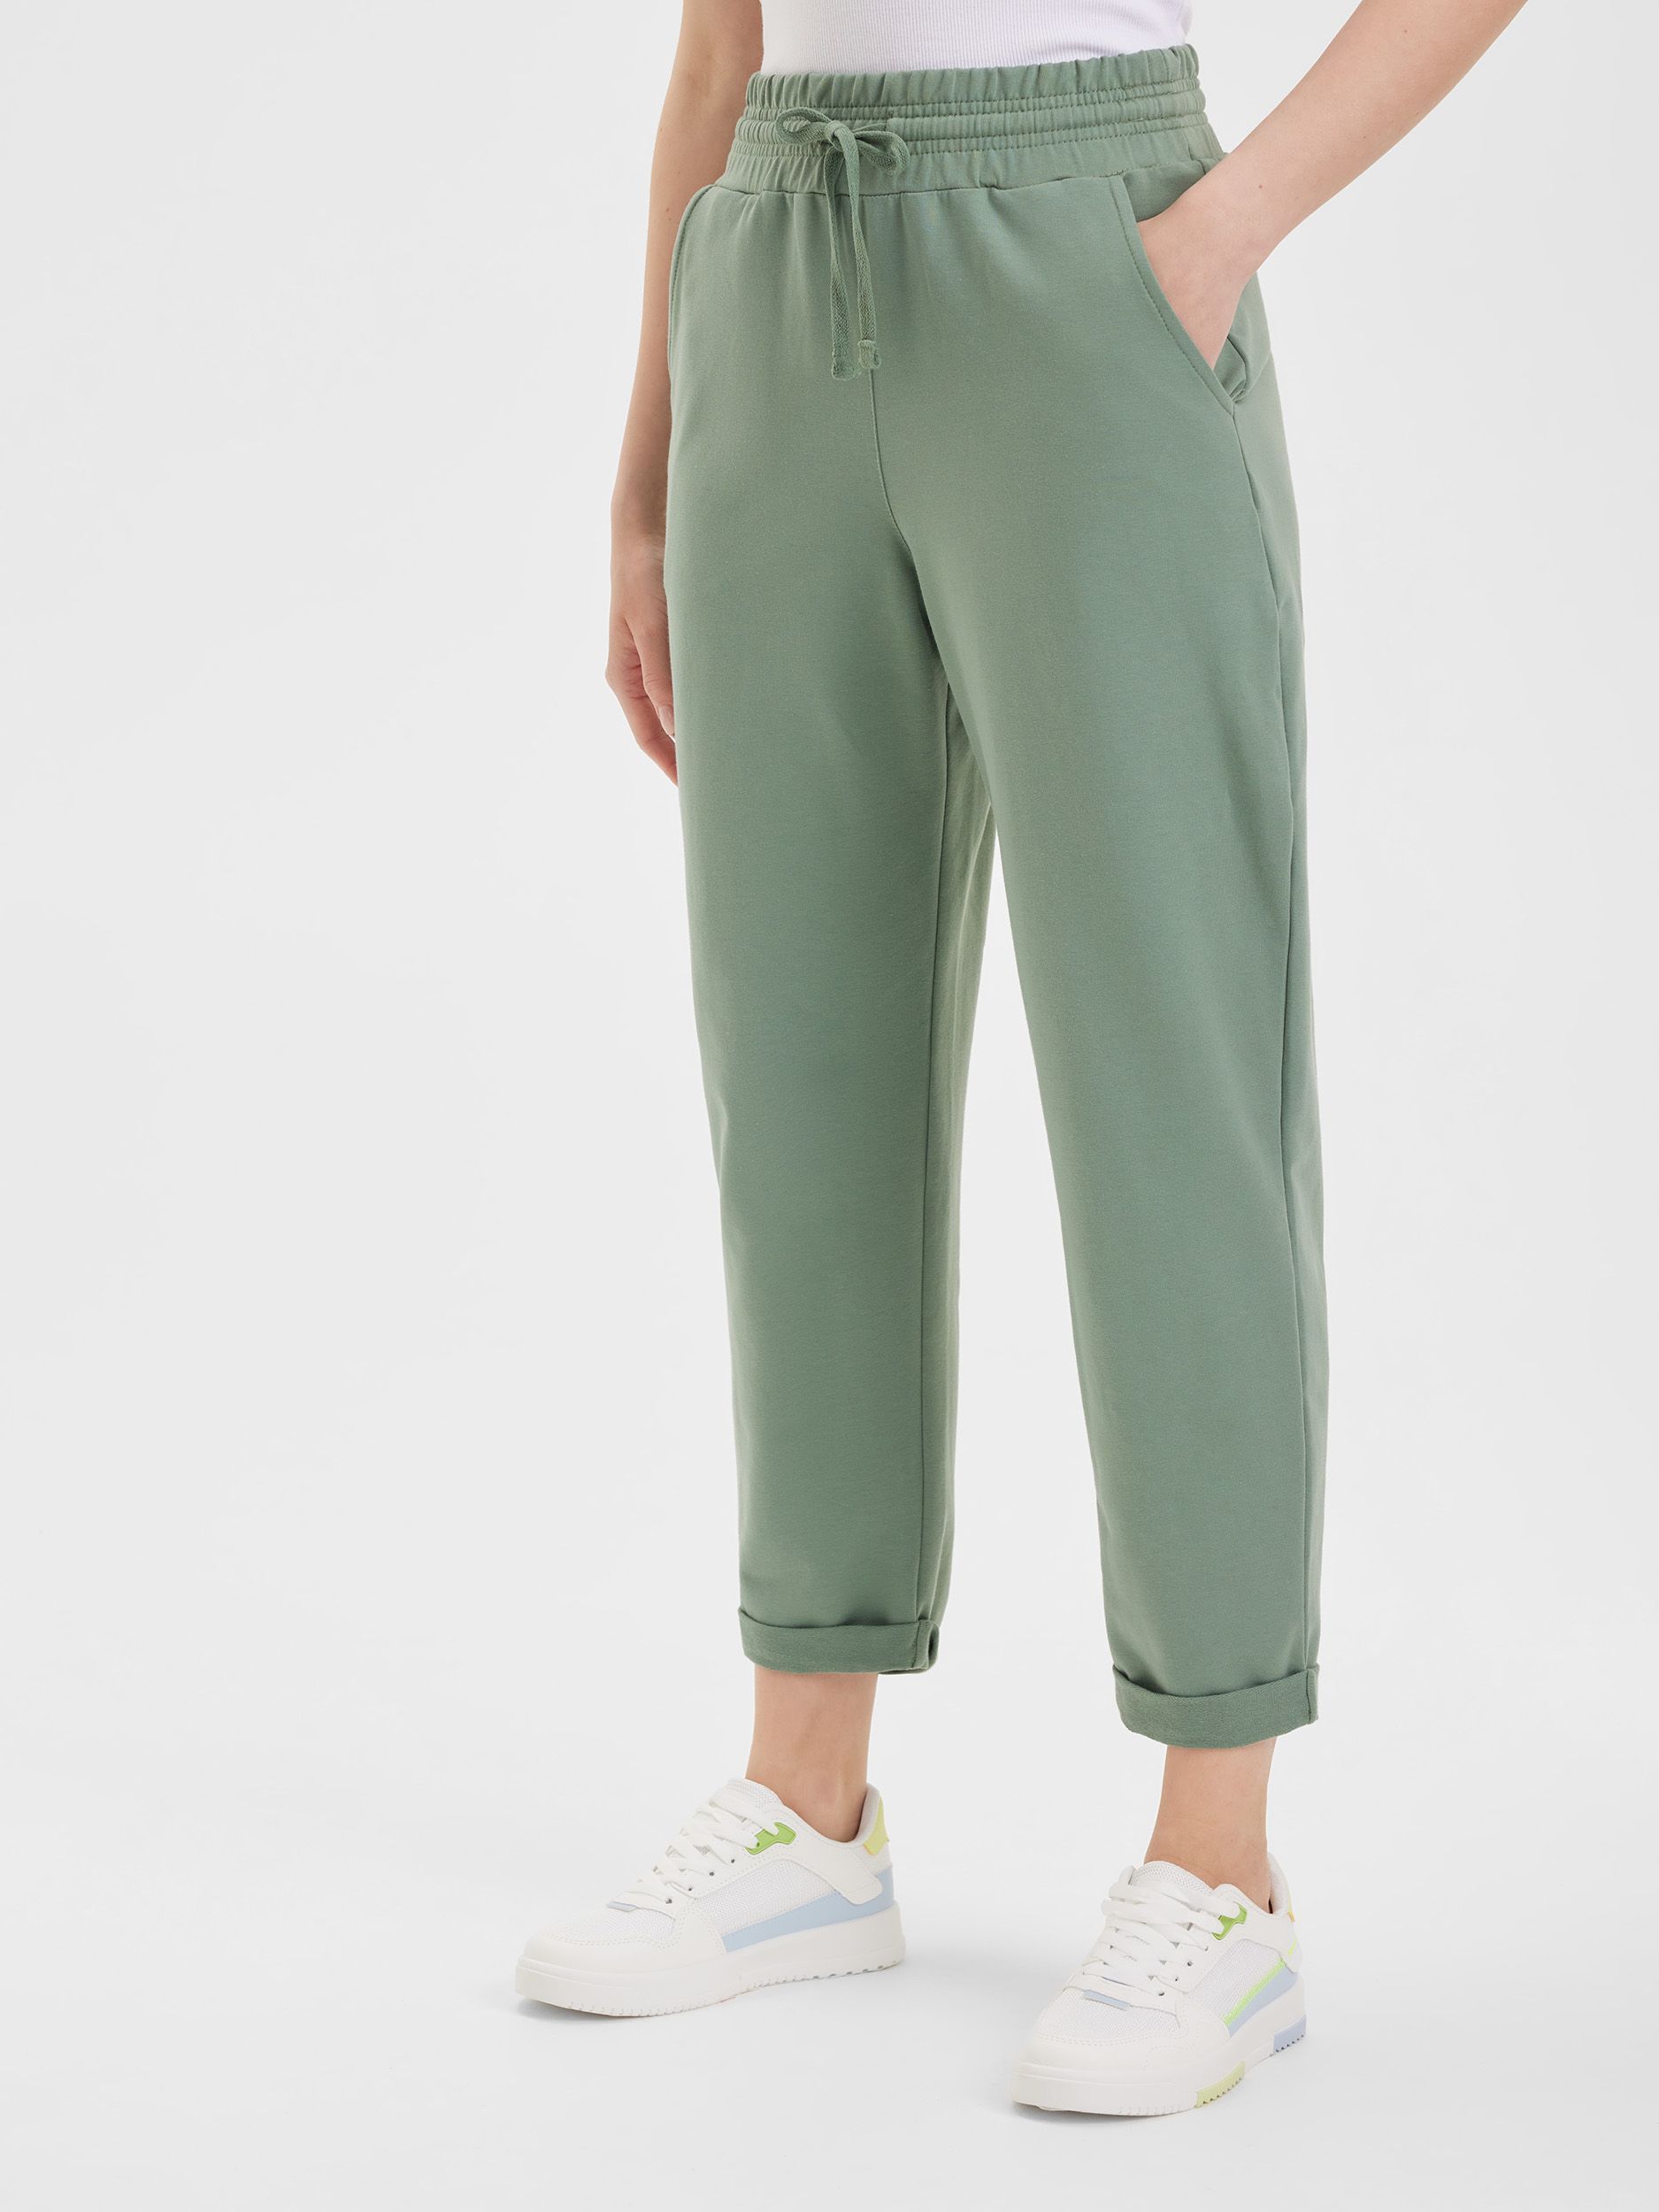 Спортивные брюки женские LAINA S22-W1-751 зеленые 56 RU